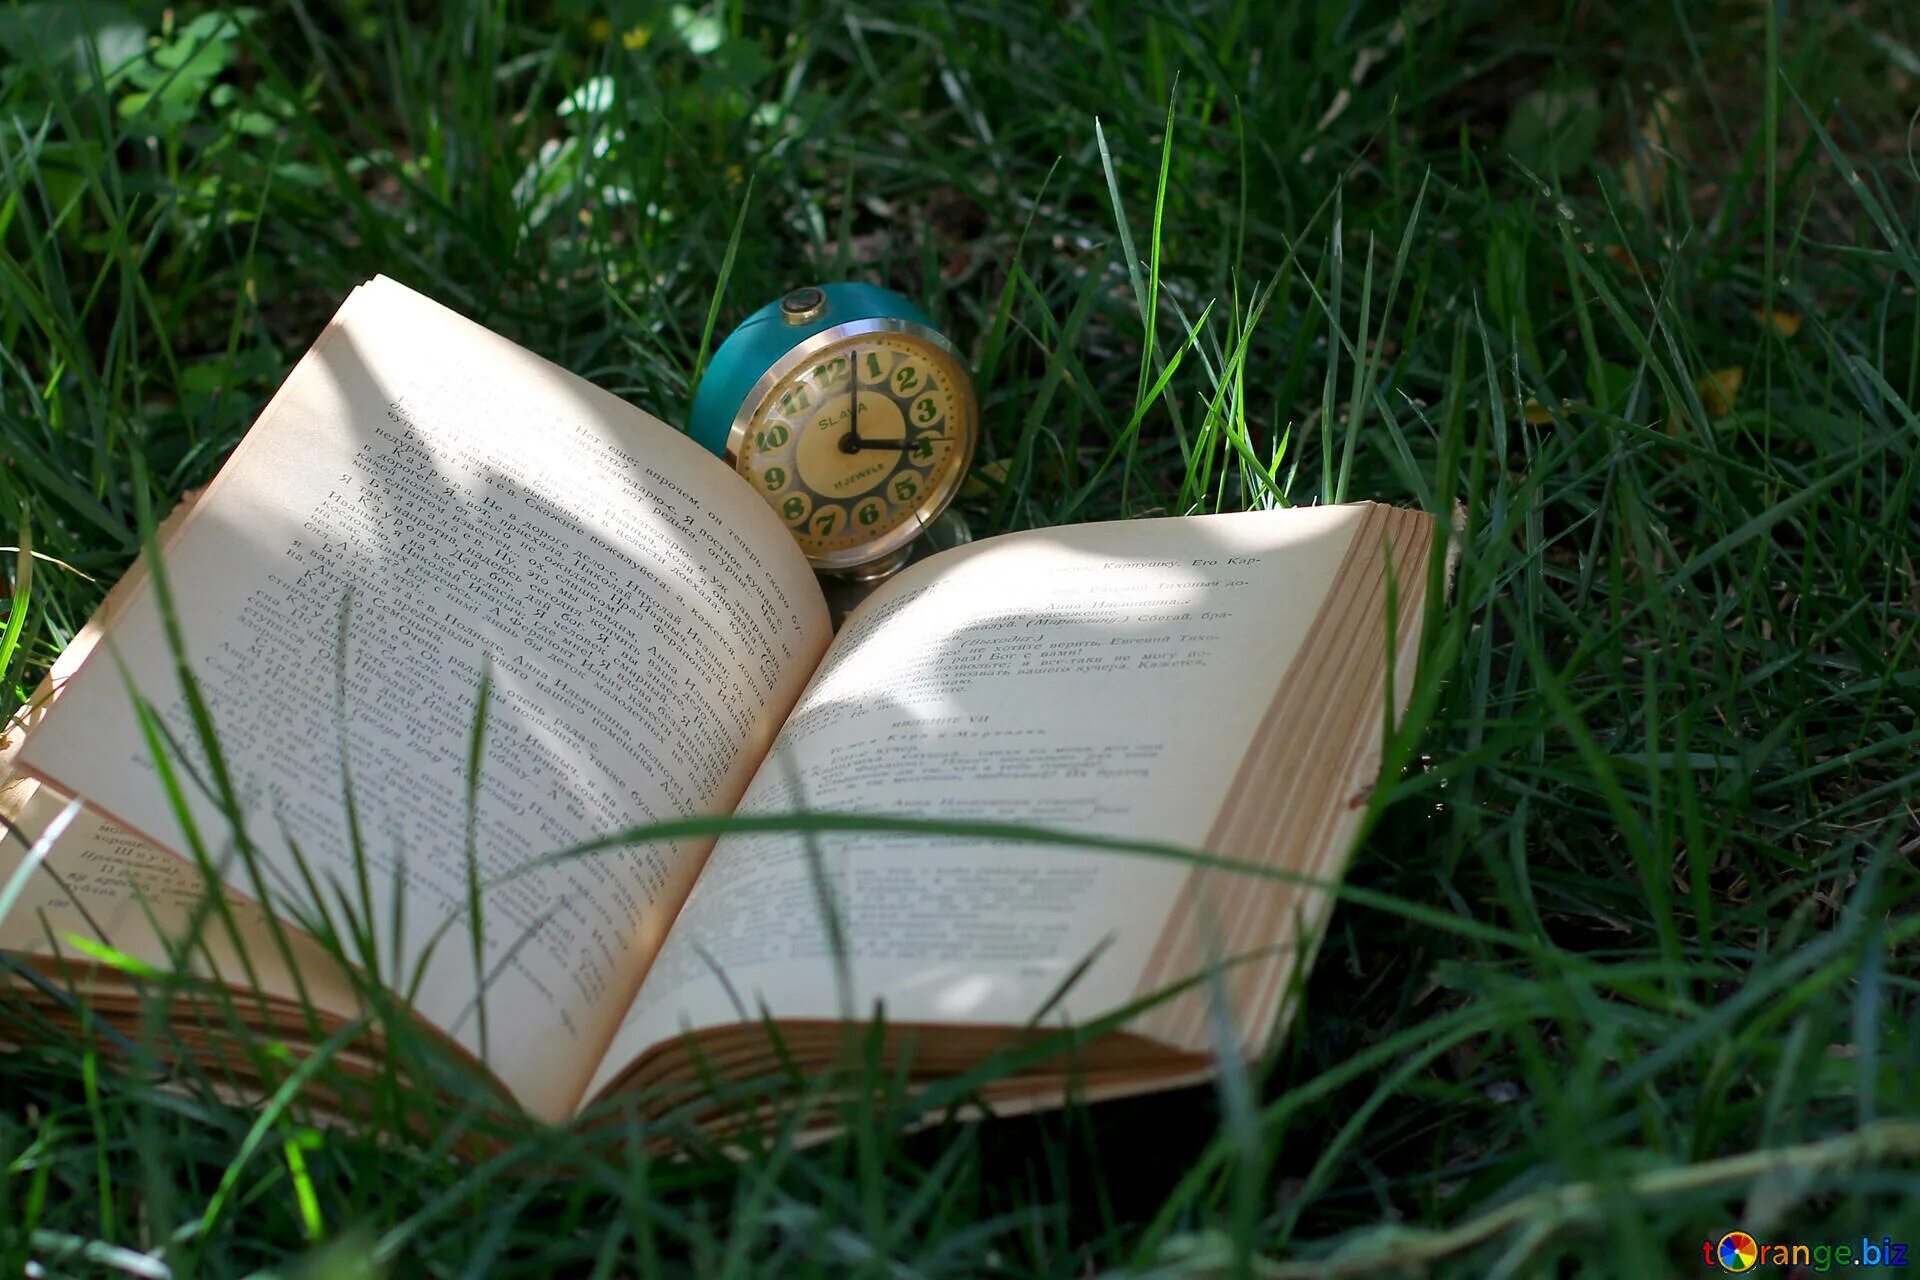 Книга на траве. Раскрытая книга. Книги на траве красивые. Раскрытая книга на траве. Открытая книга роли